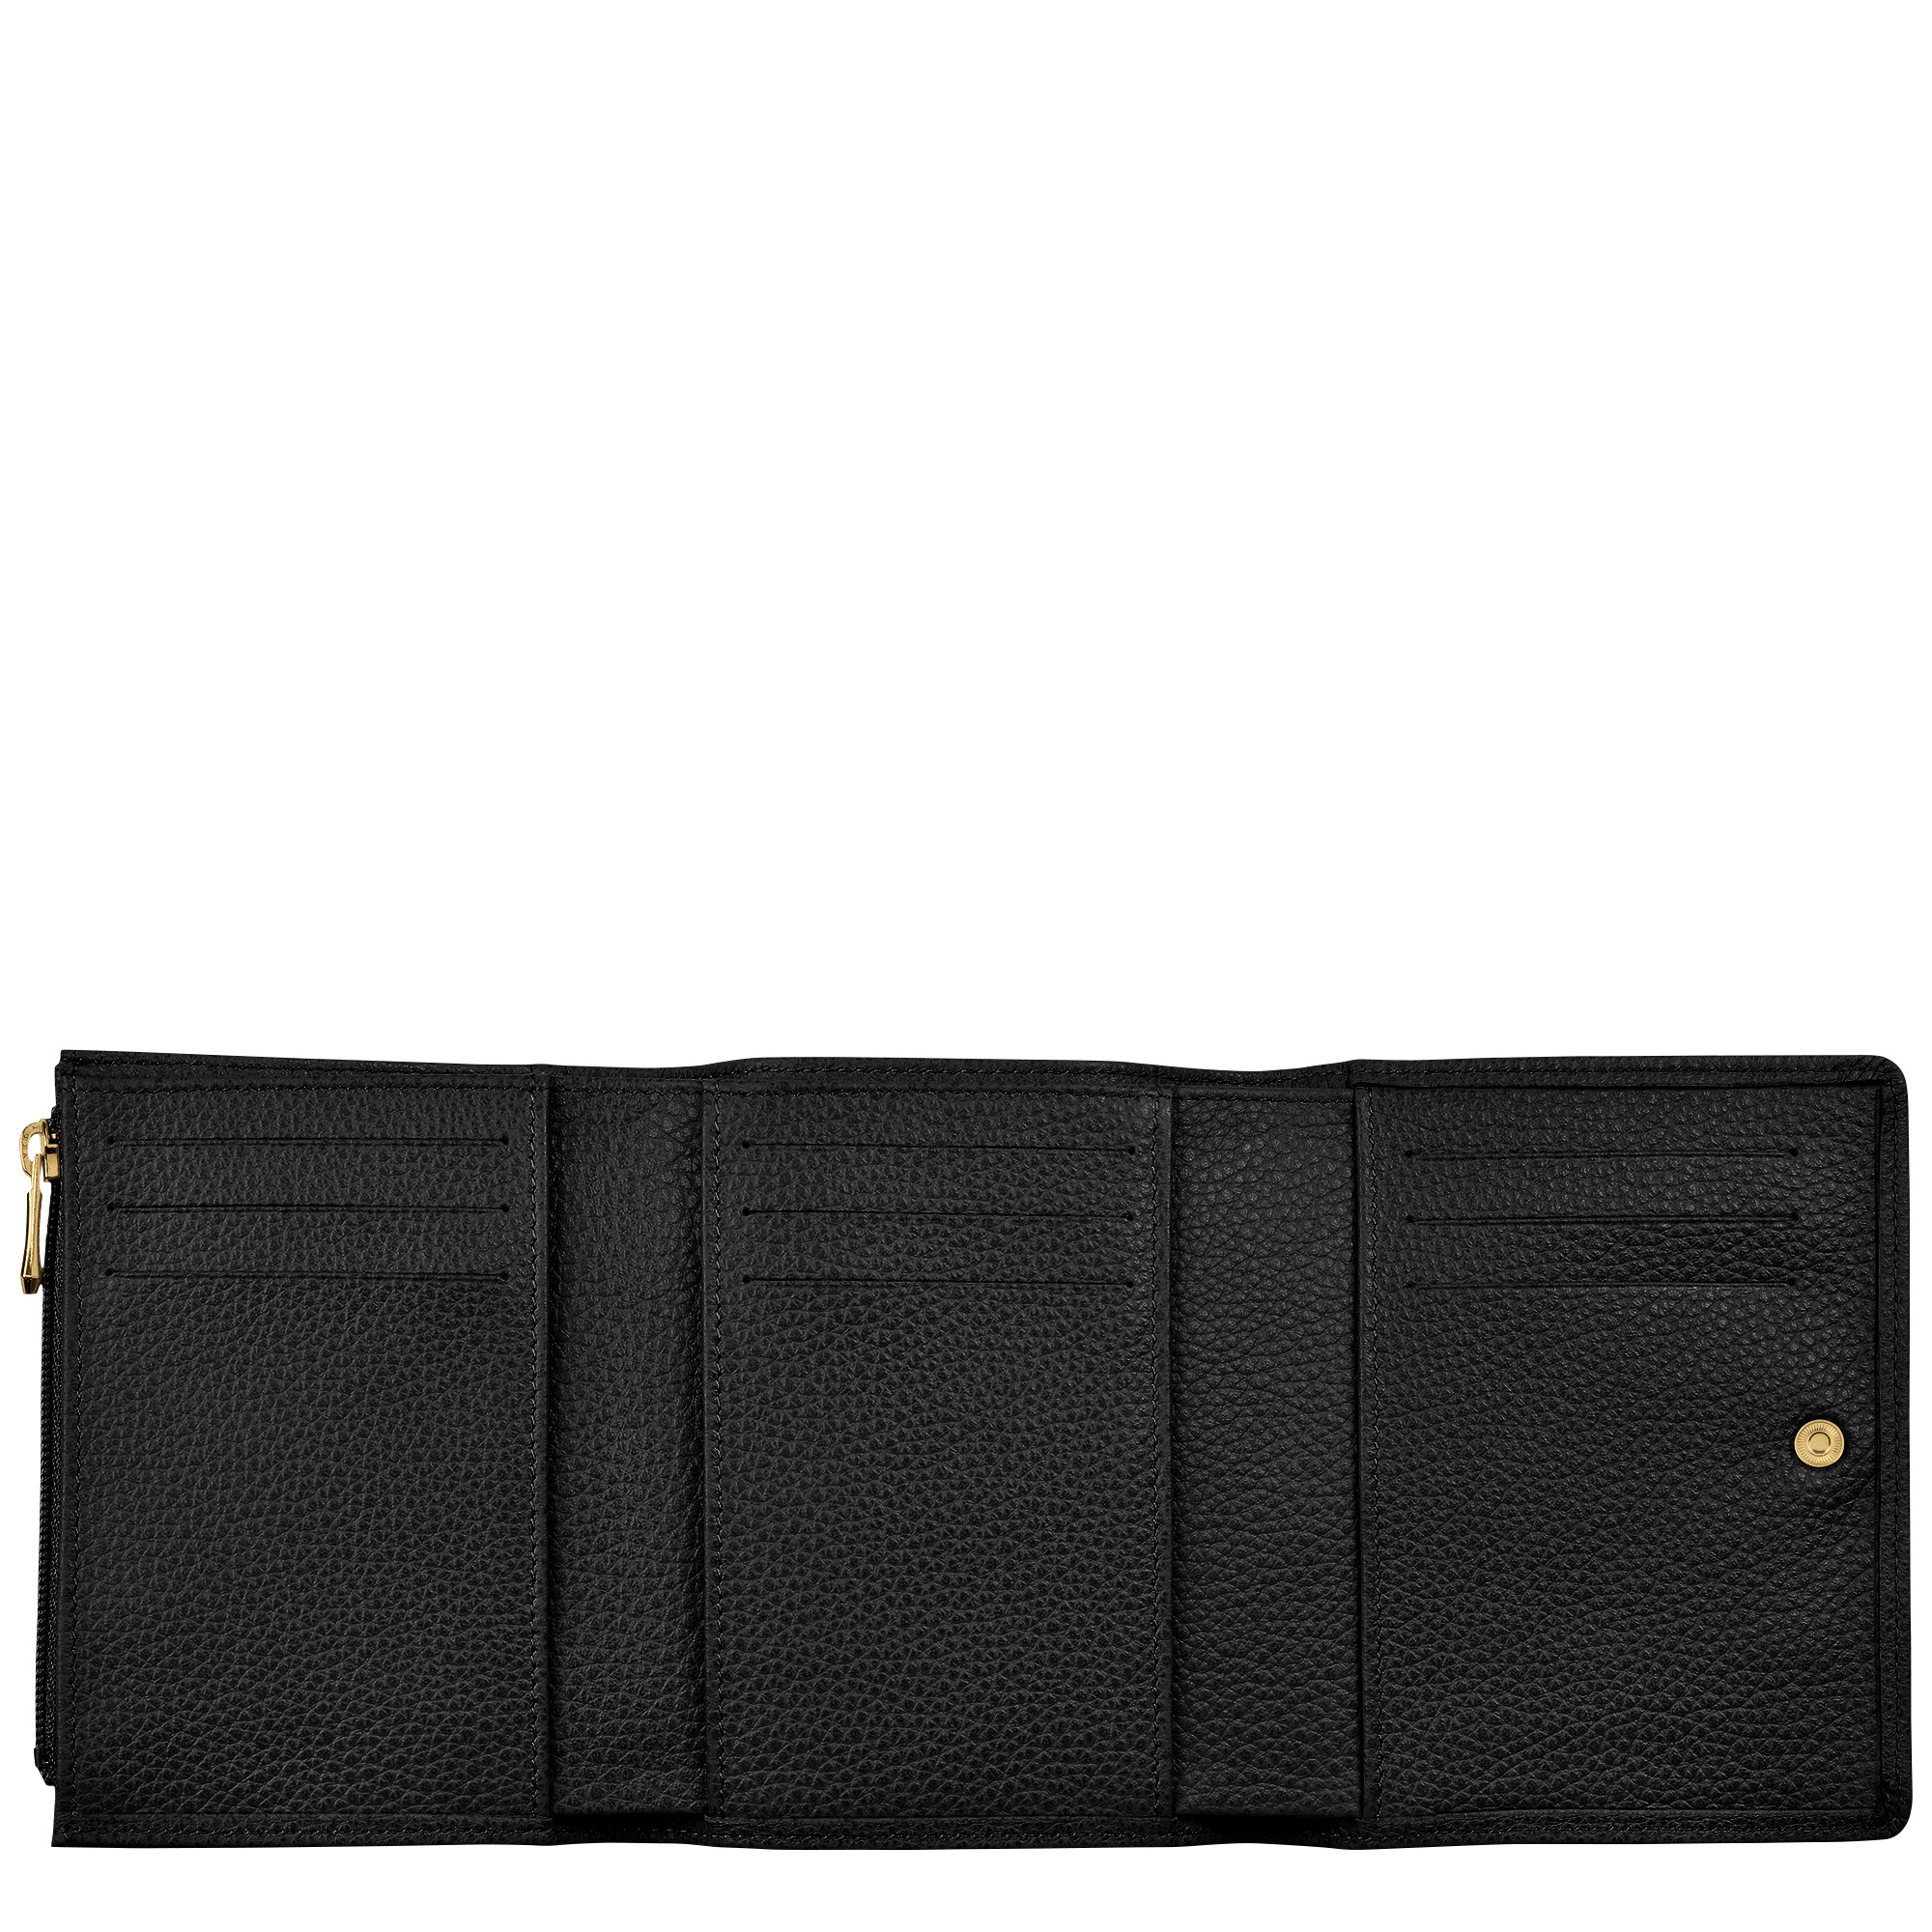 Le Foulonné Wallet Black - Leather - 2